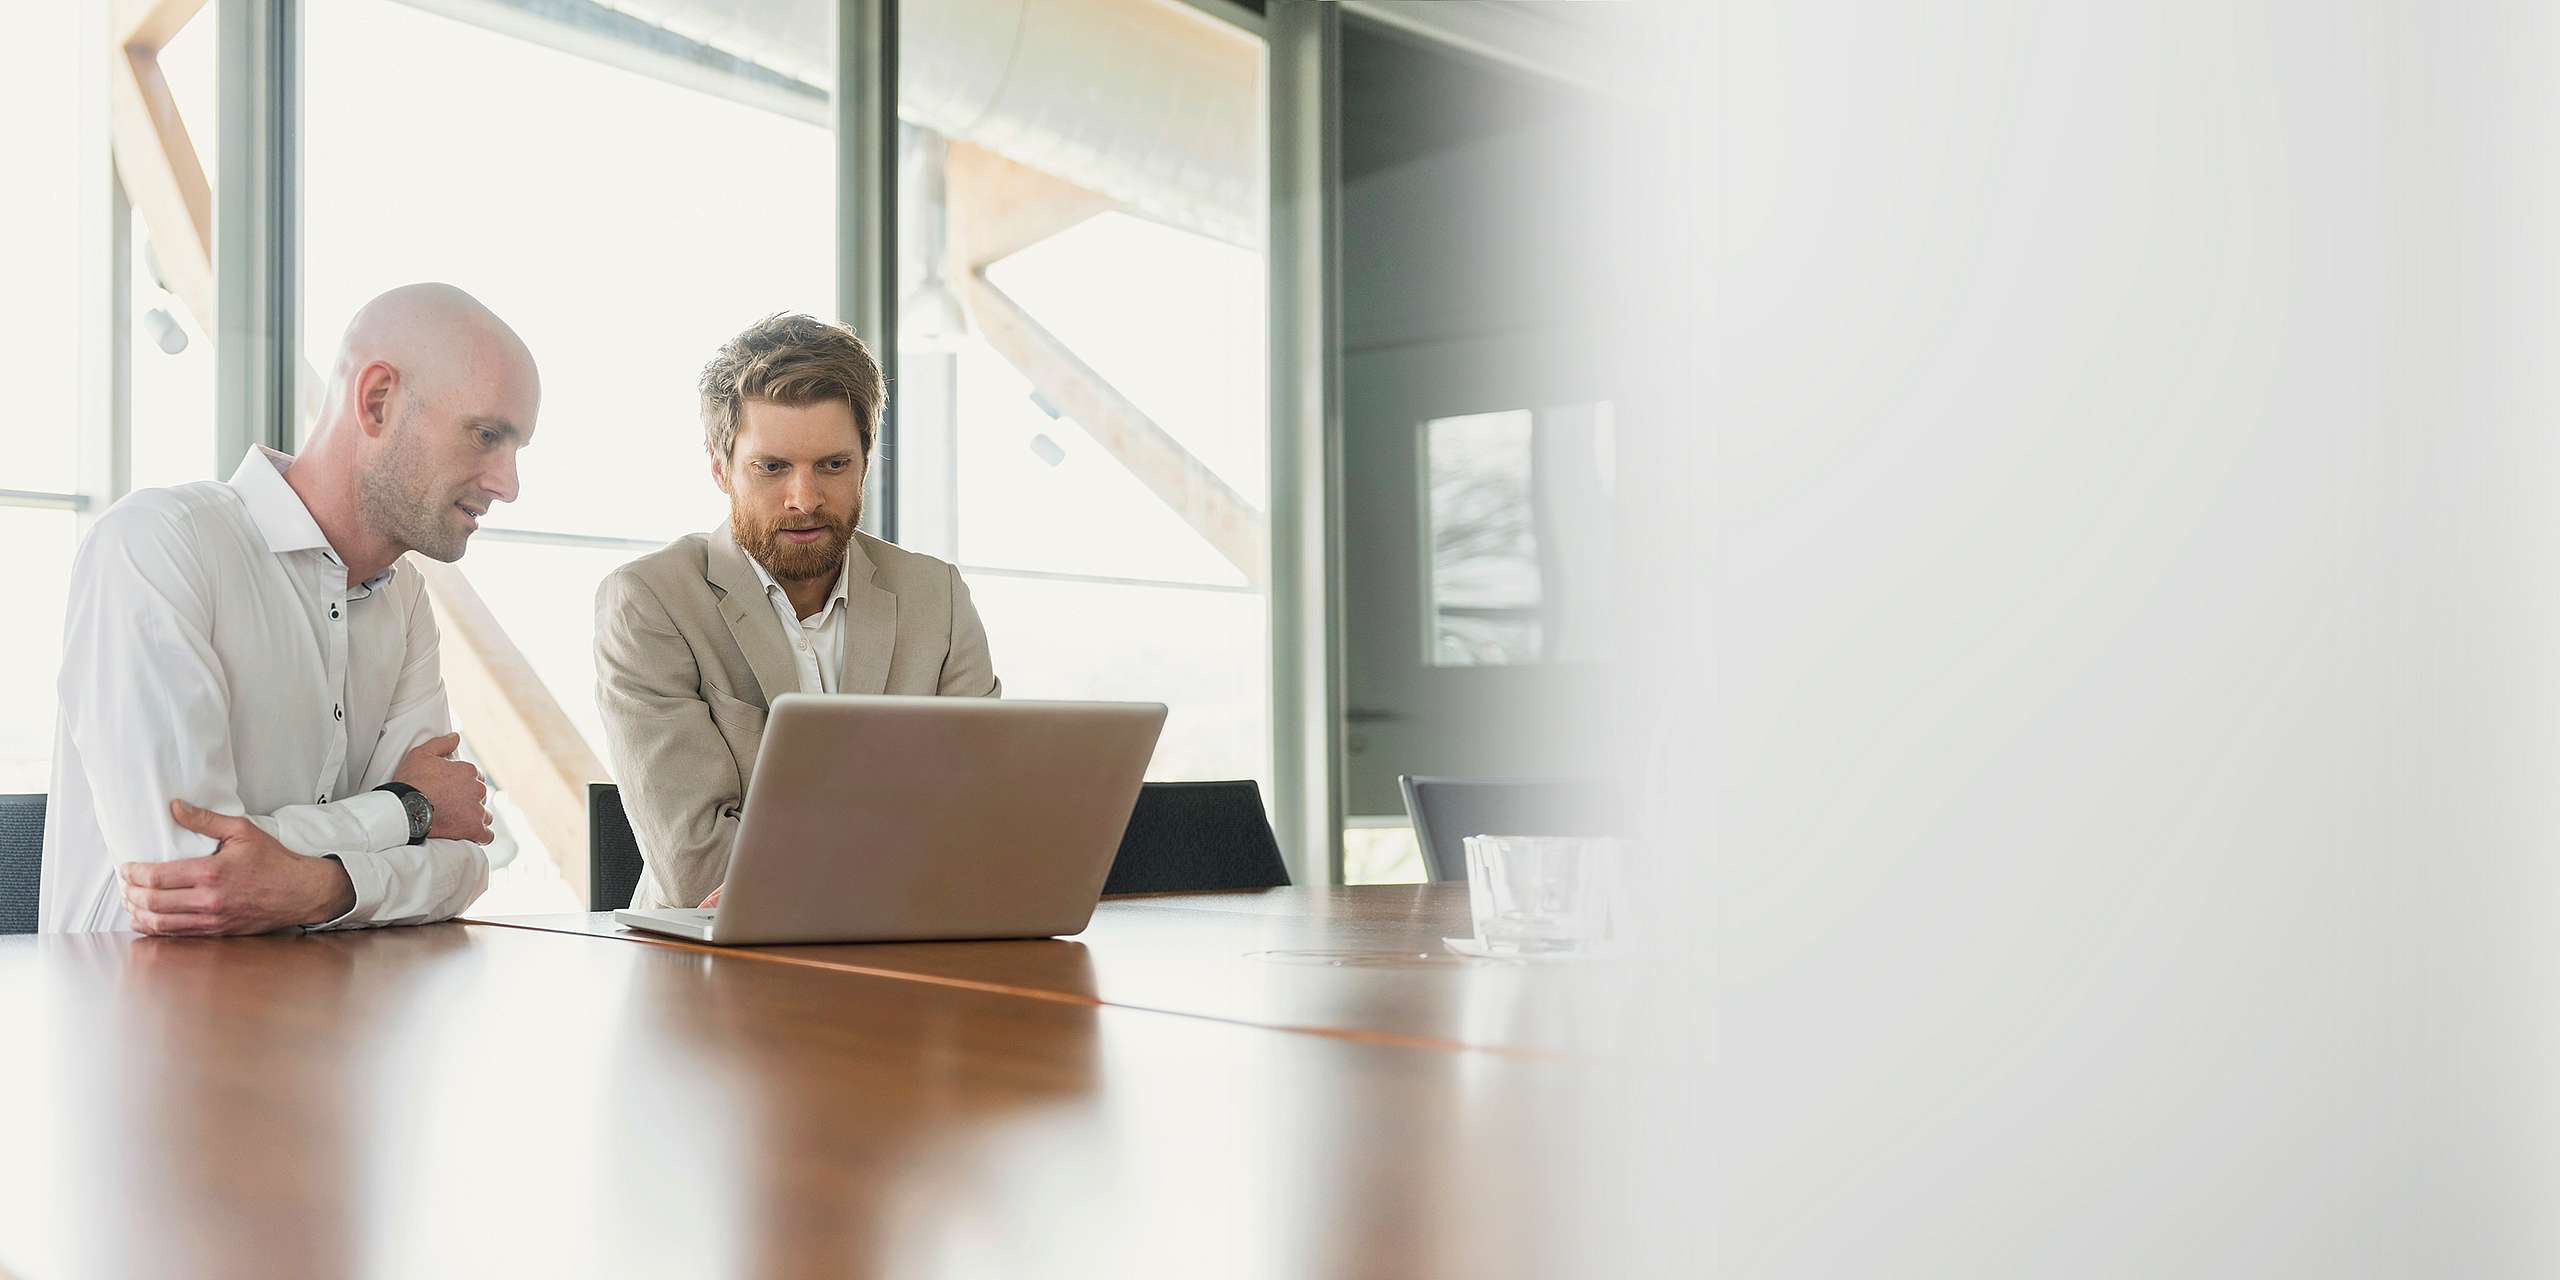 Zwei Männer in Business-Kleidung sitzen an einem Laptop in einem Konferenzraum